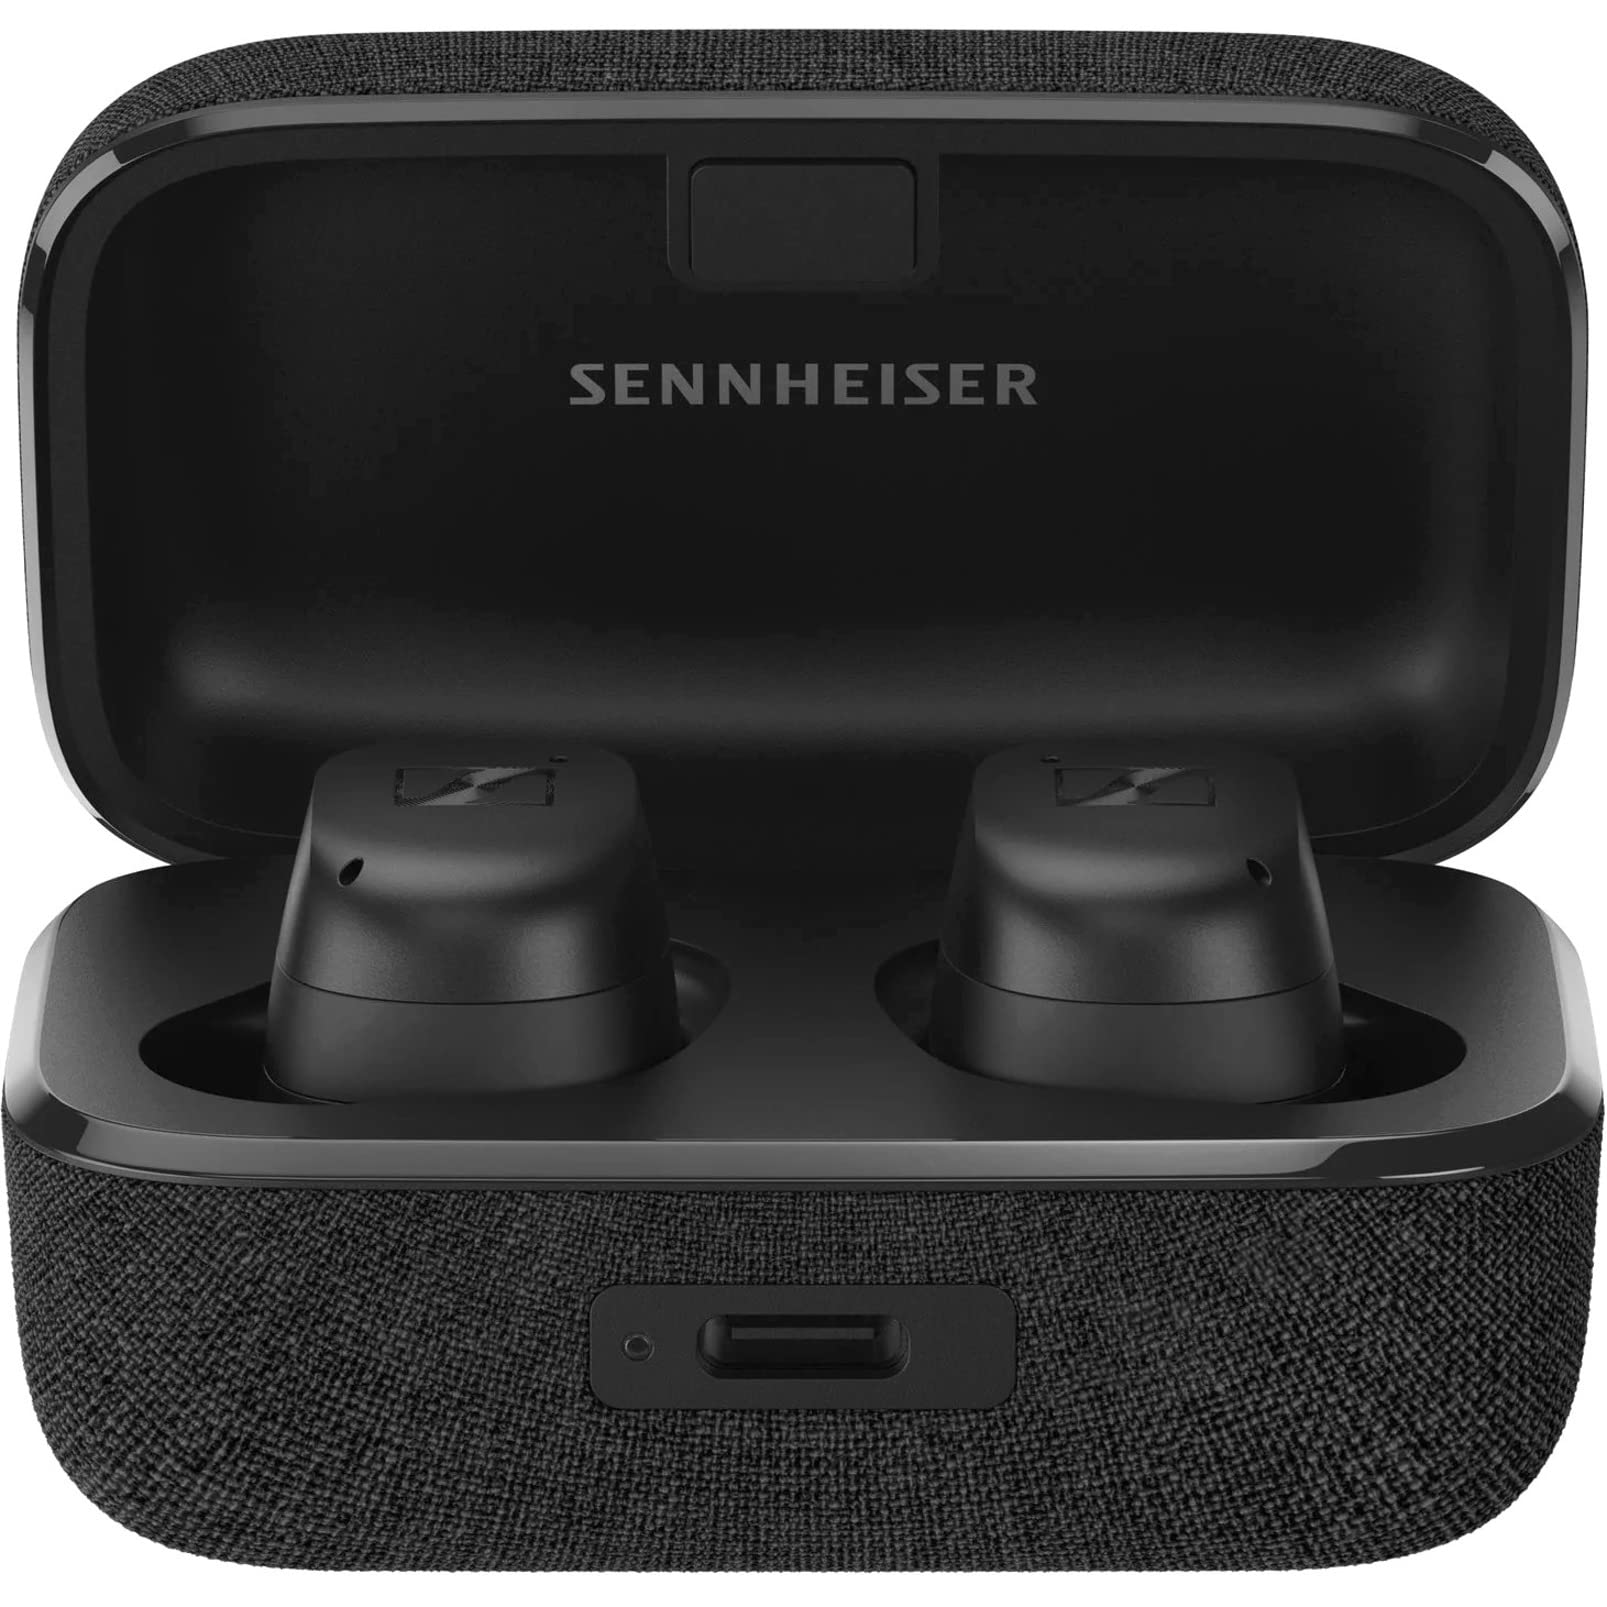 Sennheiser Consumer Audio 젠하이저 모멘텀 트루 와이어리스 3...